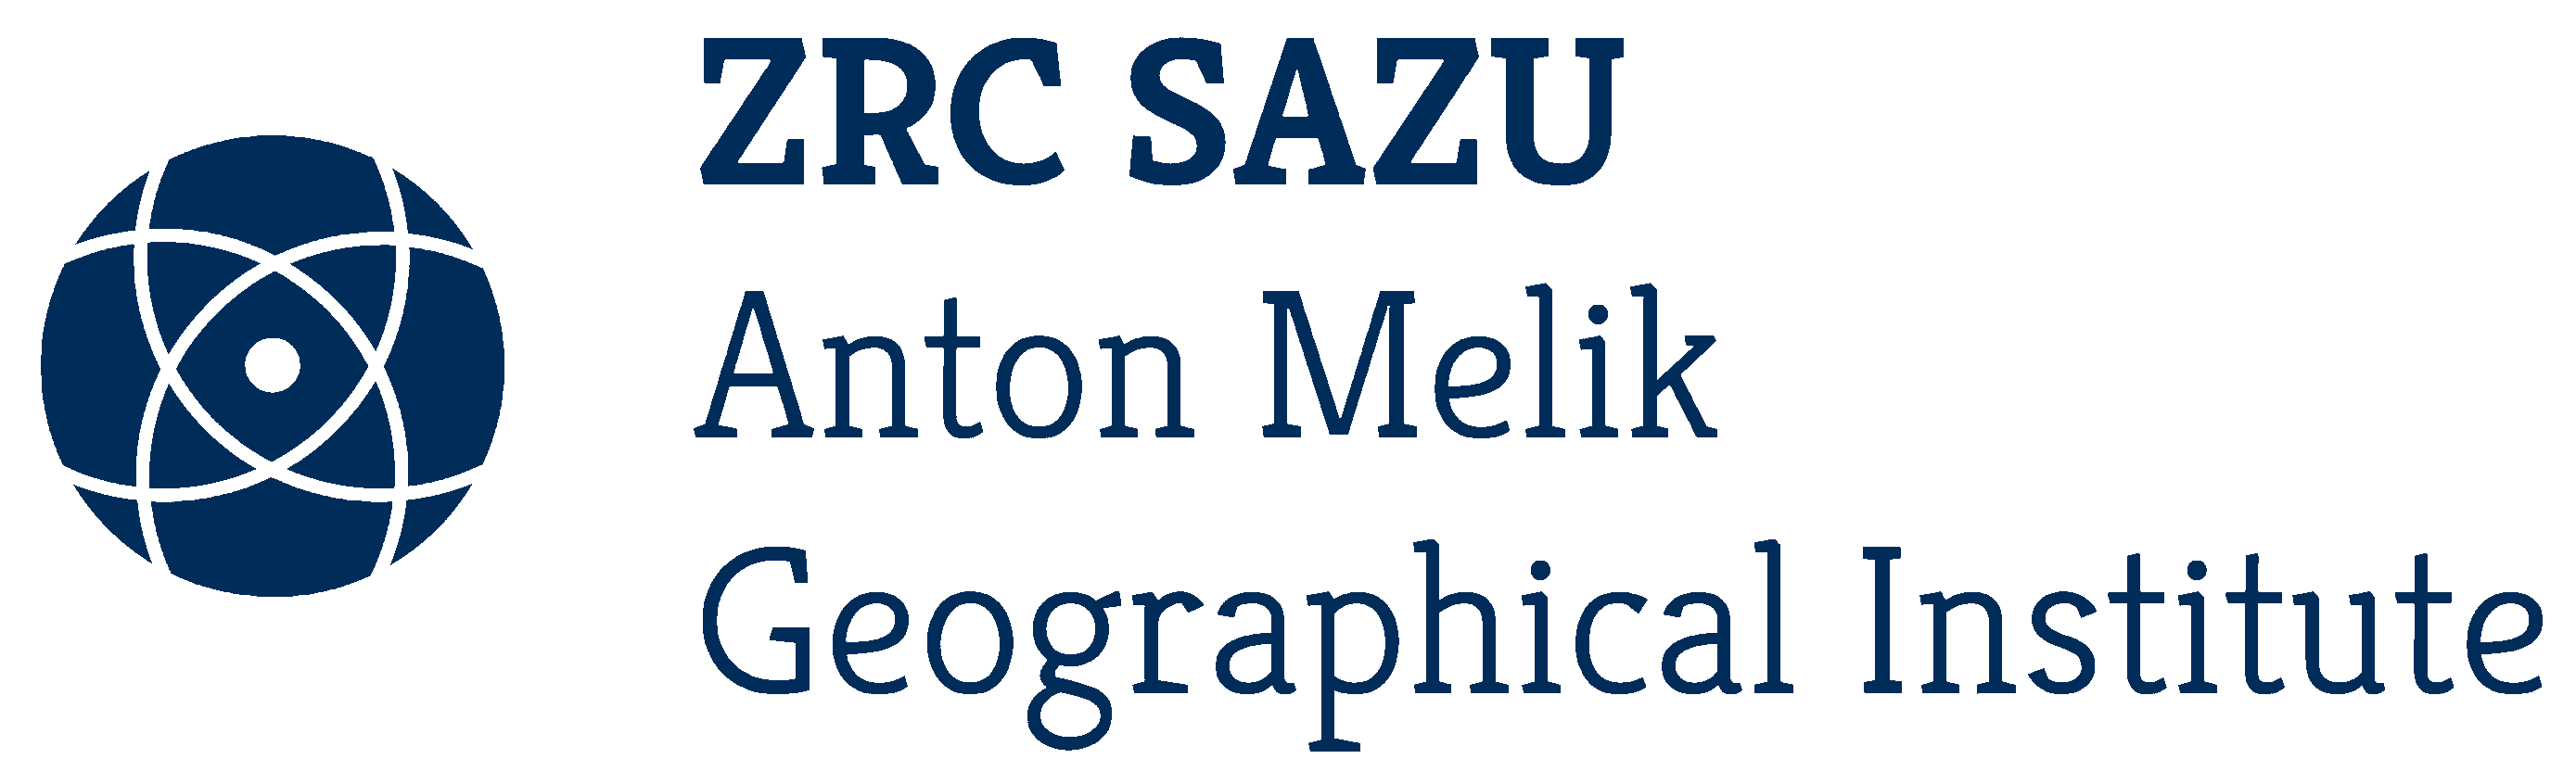 ZRC-SAZU-Logo